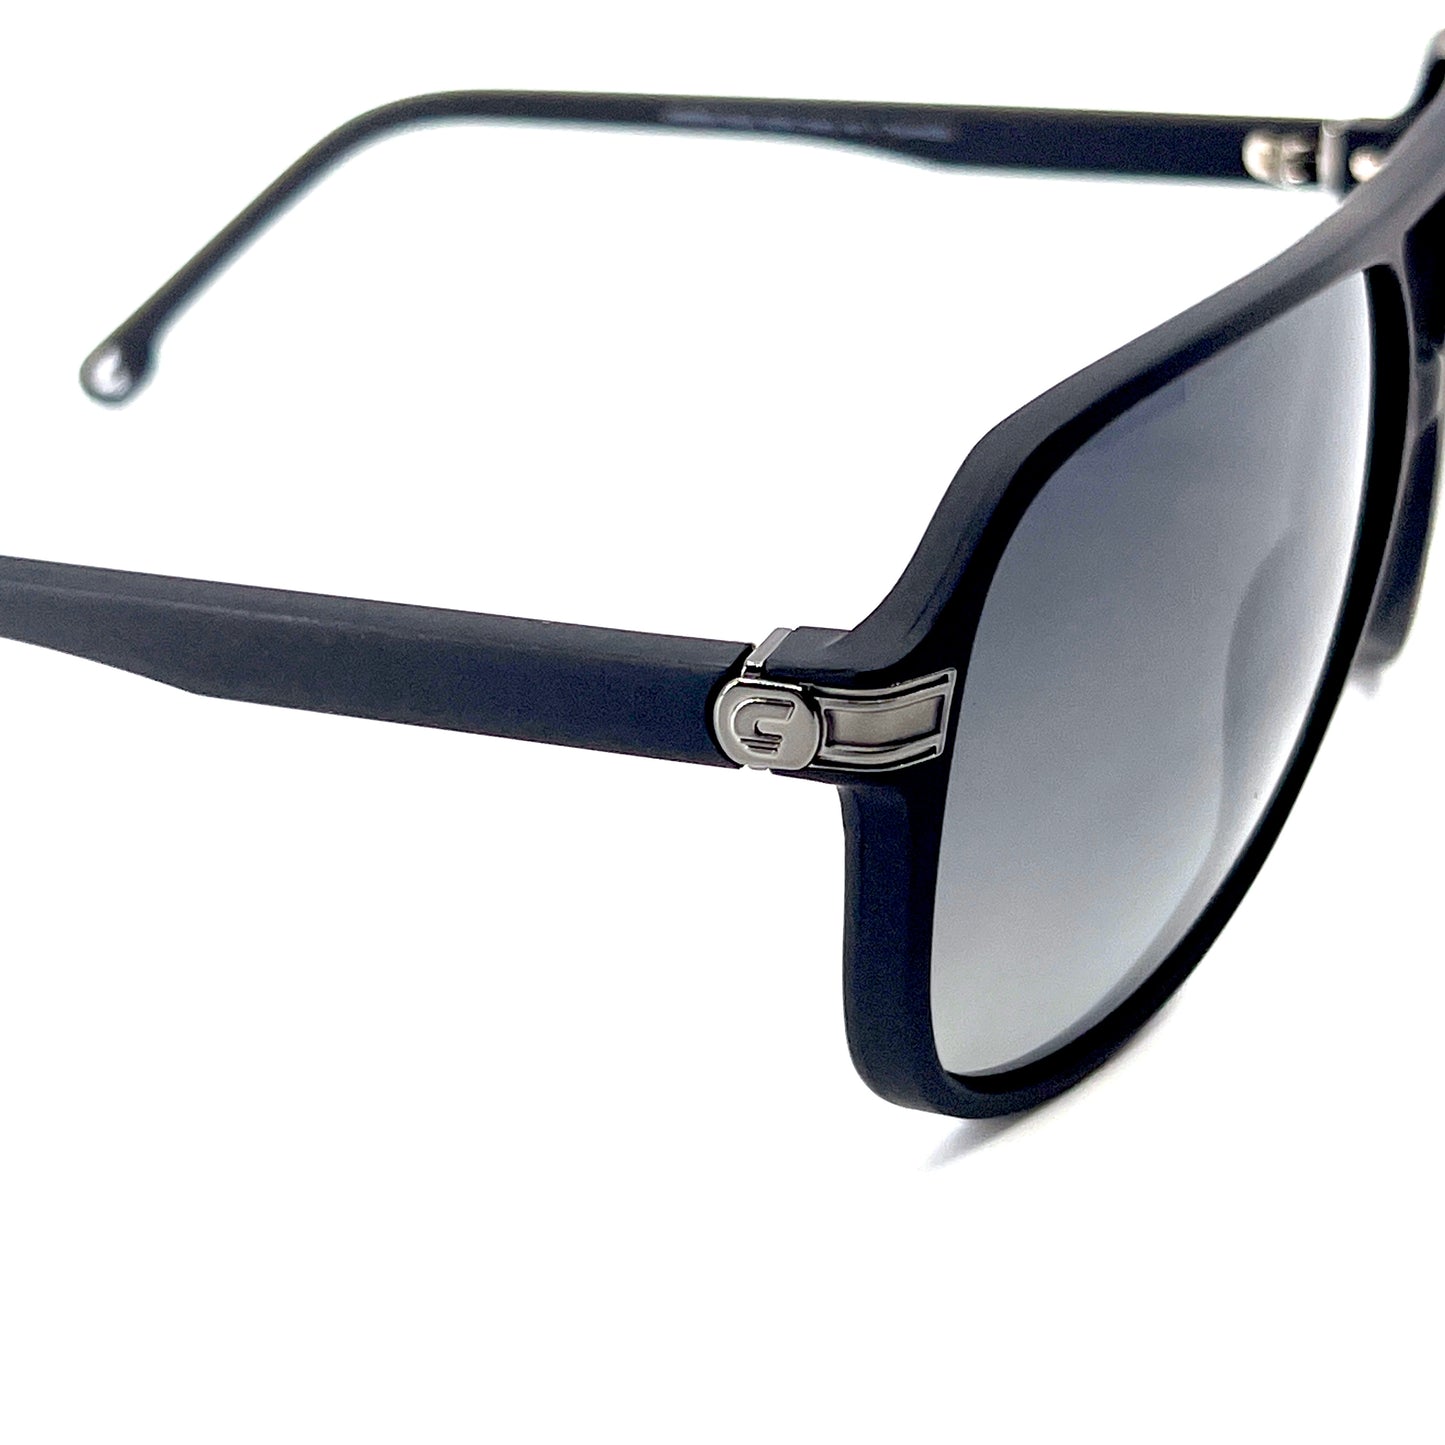 CARRERA Sunglasses 1045/S 003WJ Polarized